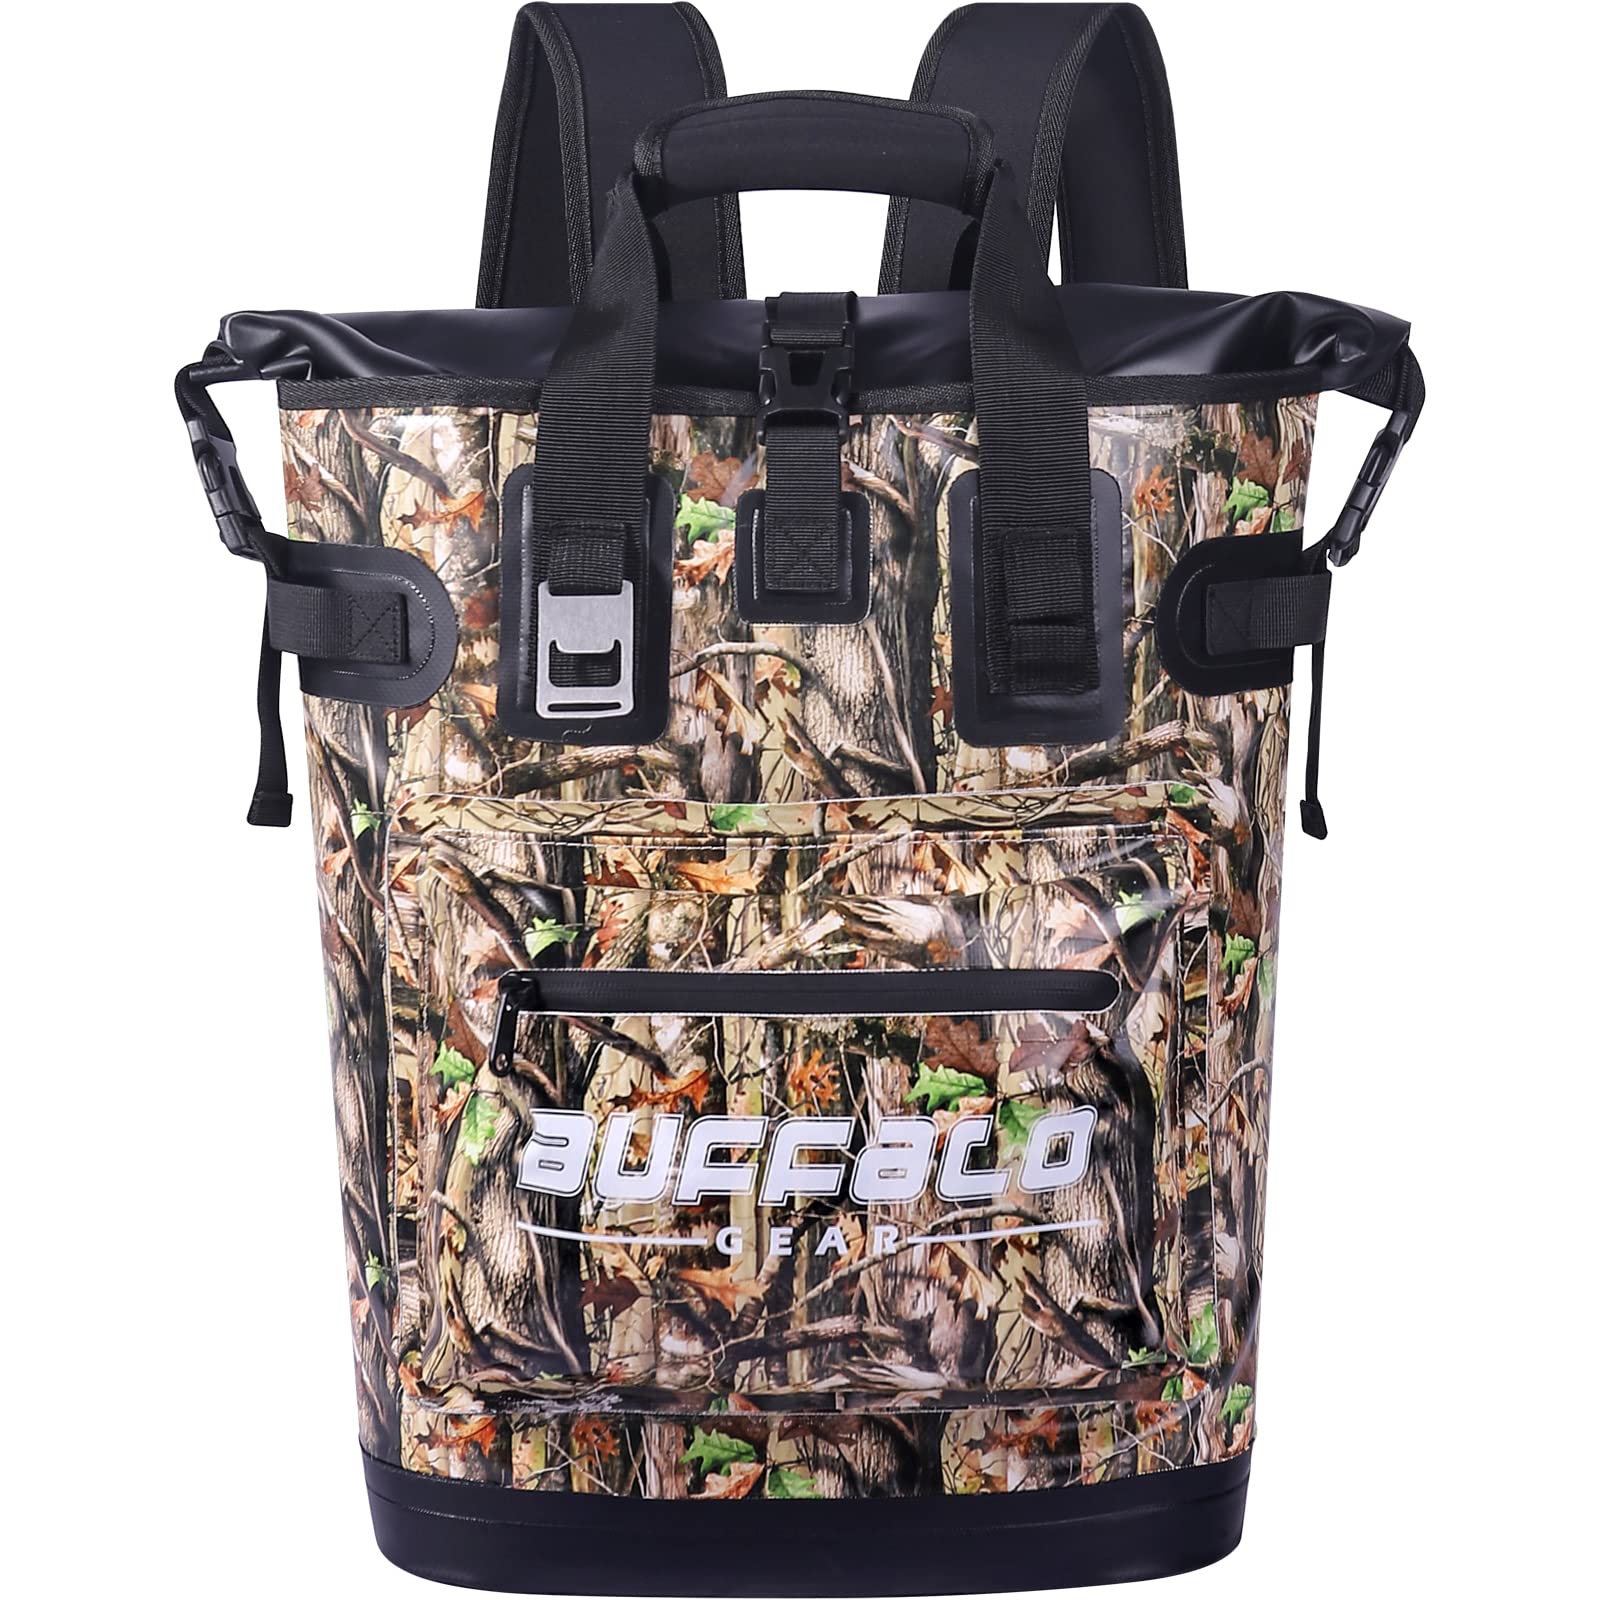 送料無料Buffalo Gear Cooler Backpack18L Leakproof Cooler Bag Insulated Cooler for Picnic Beach Camping Hiking Park Fishi